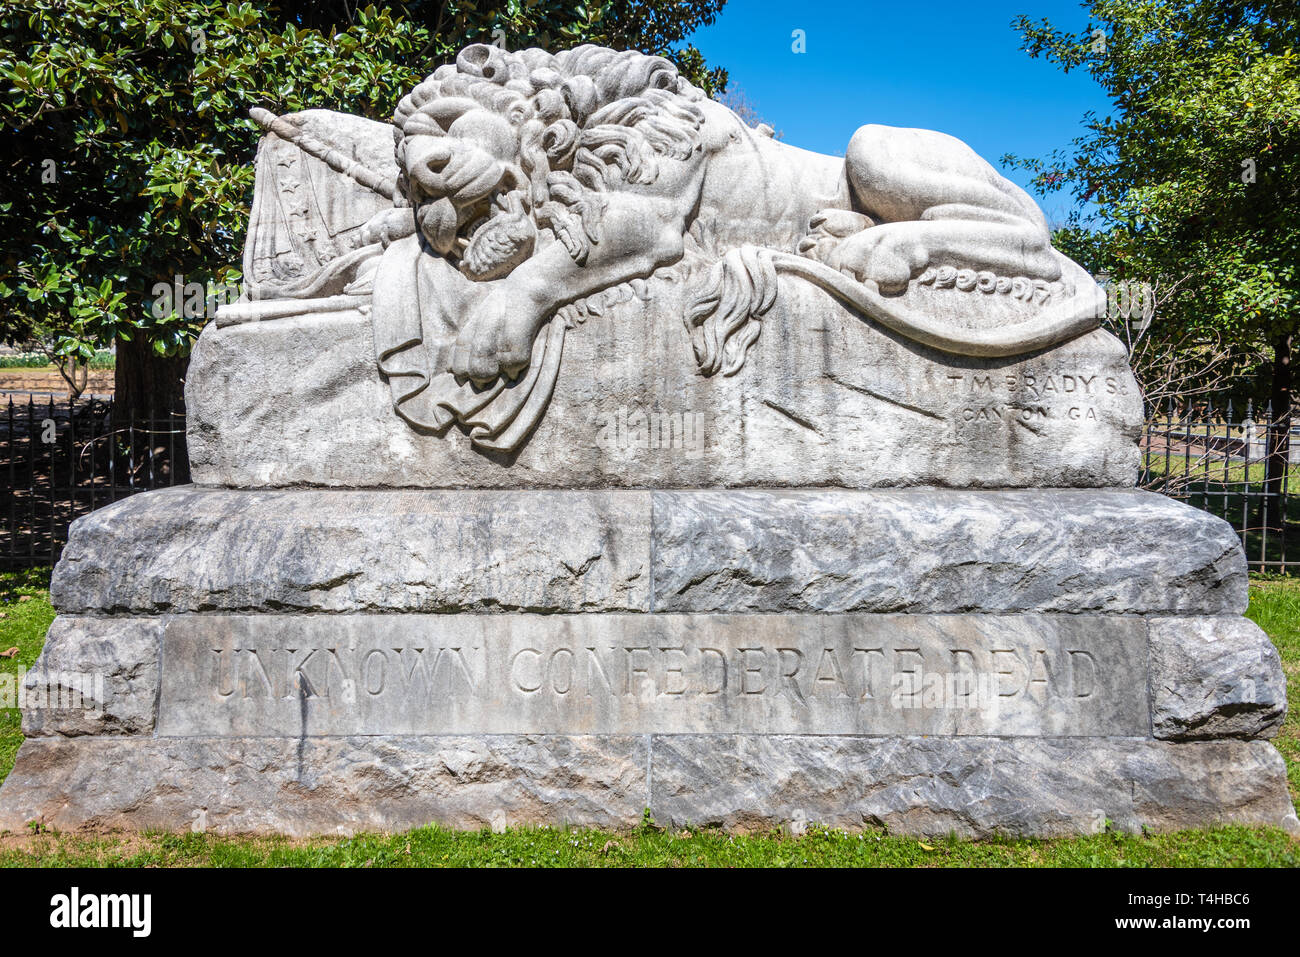 Unbekannte Confederate Dead Memorial als Der Löwe der Konföderation, oder der Löwe von Atlanta, an der Oakland Cemetery in Atlanta, Georgia bekannt. (USA) Stockfoto